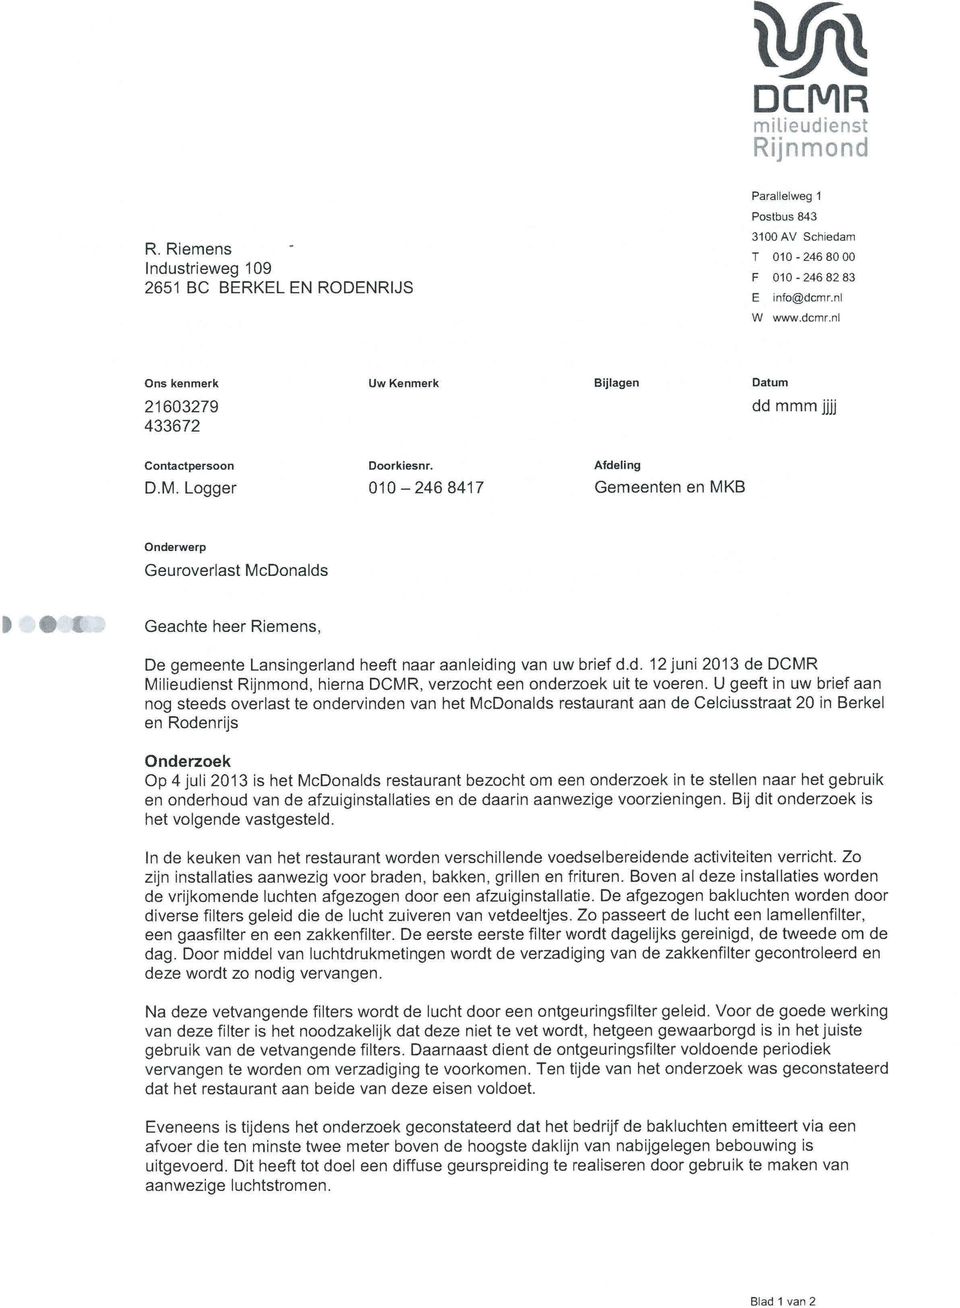 Logger 010-2468417 Gemeenten en MKB Onderwerp Geuroverlast McDonalds t: Geachte heer Riemens, De gemeente Lansingerland heeft naar aanleiding van uw brief d.d. 12 juni 2013 de Milieudienst, hierna, verzocht een onderzoek uit te voeren.